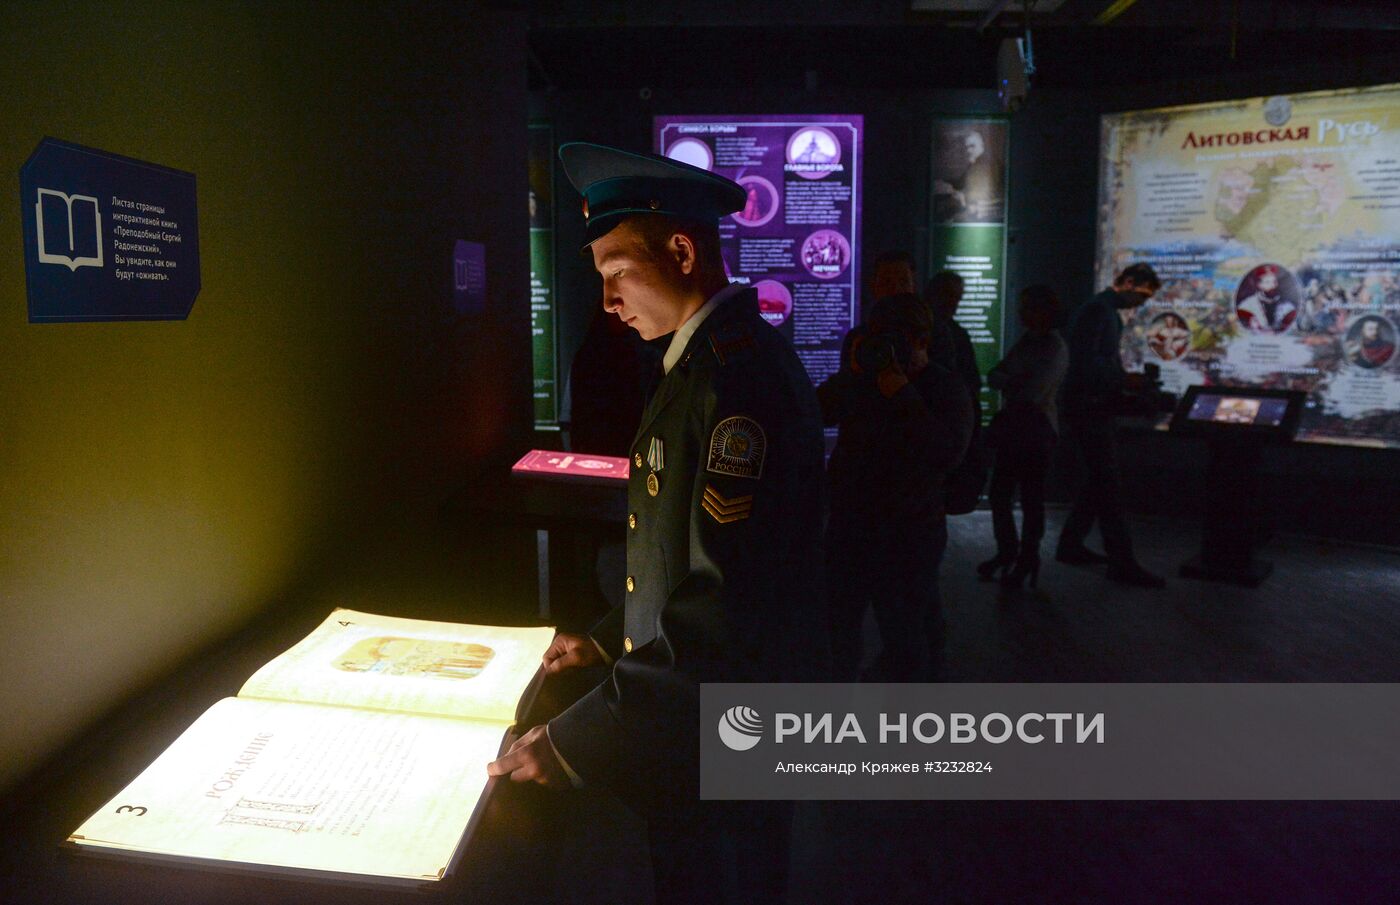 Открытие мультимедийного парка "Россия - моя история" в Новосибирске